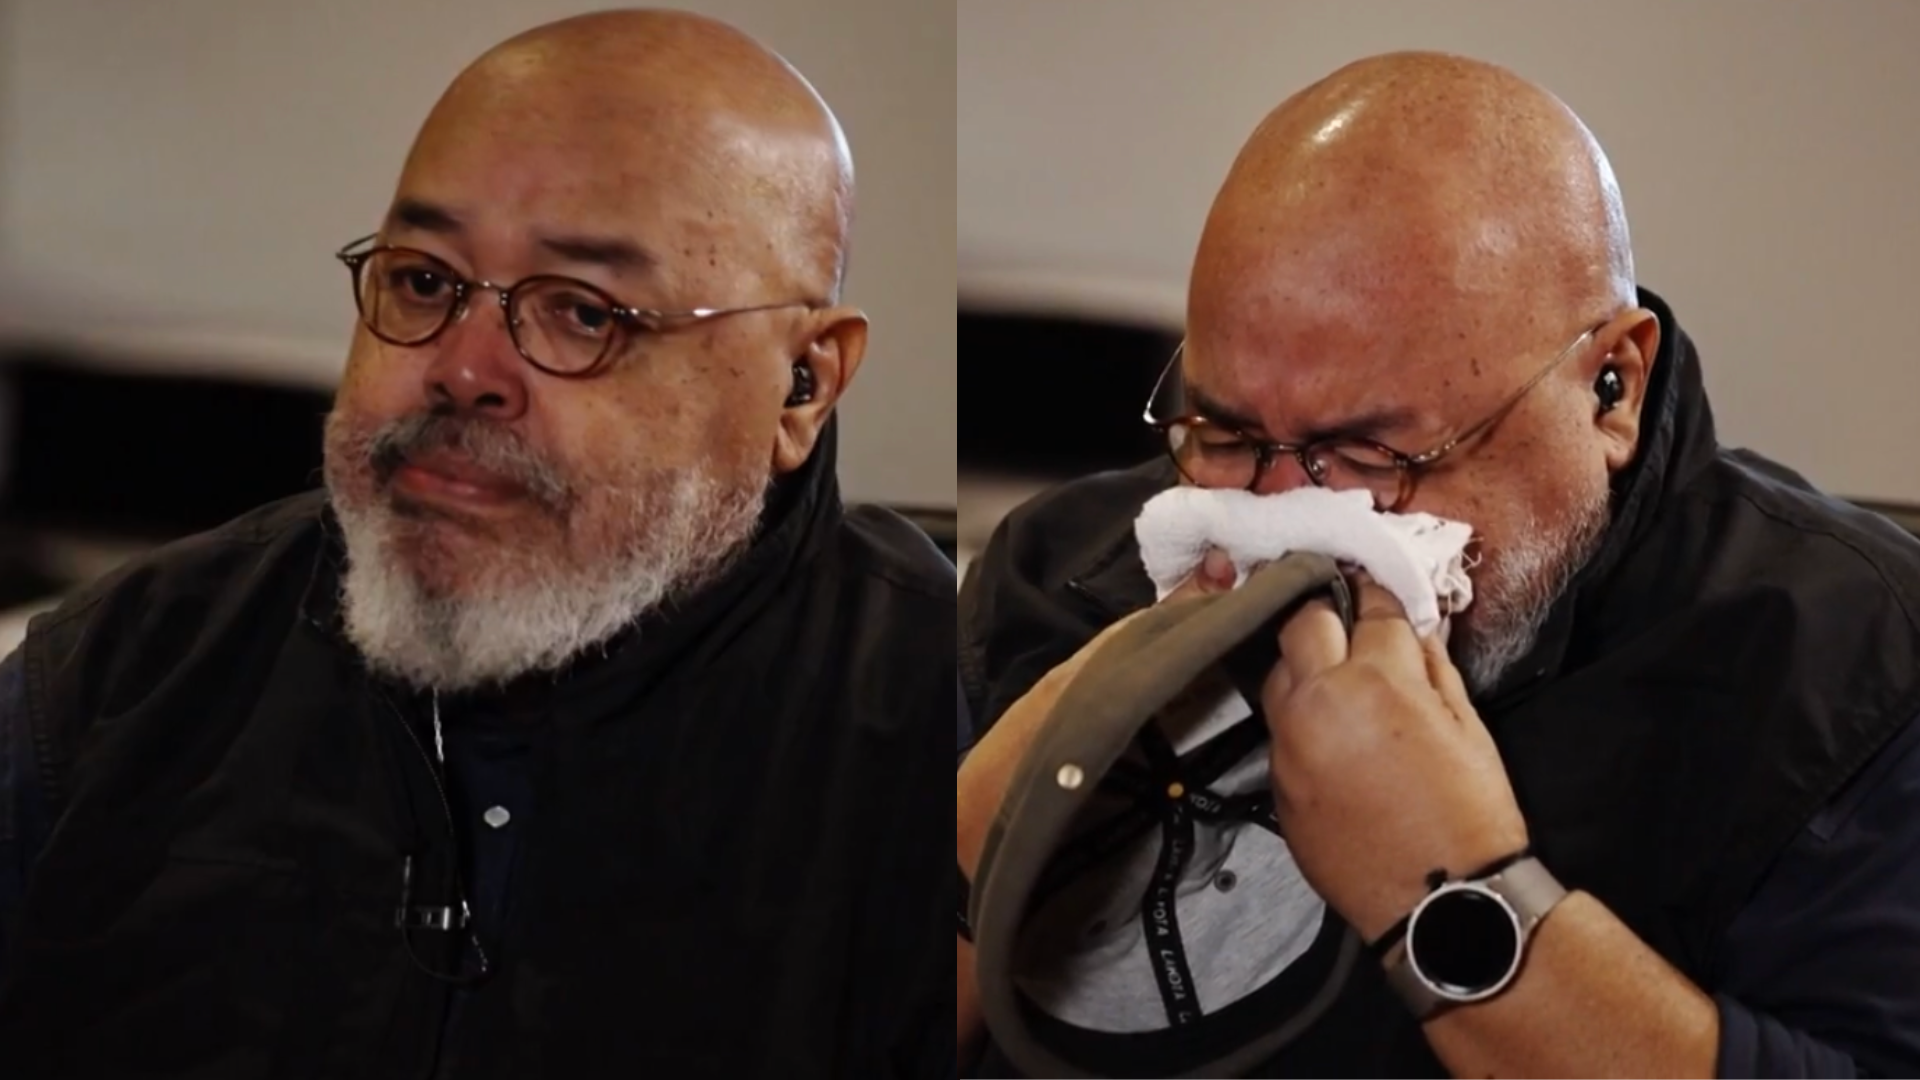 Jorge Aragão chora ao mostrar novo visual no Fantástico em tratamento contra câncer: ‘Esse sou eu’; assista